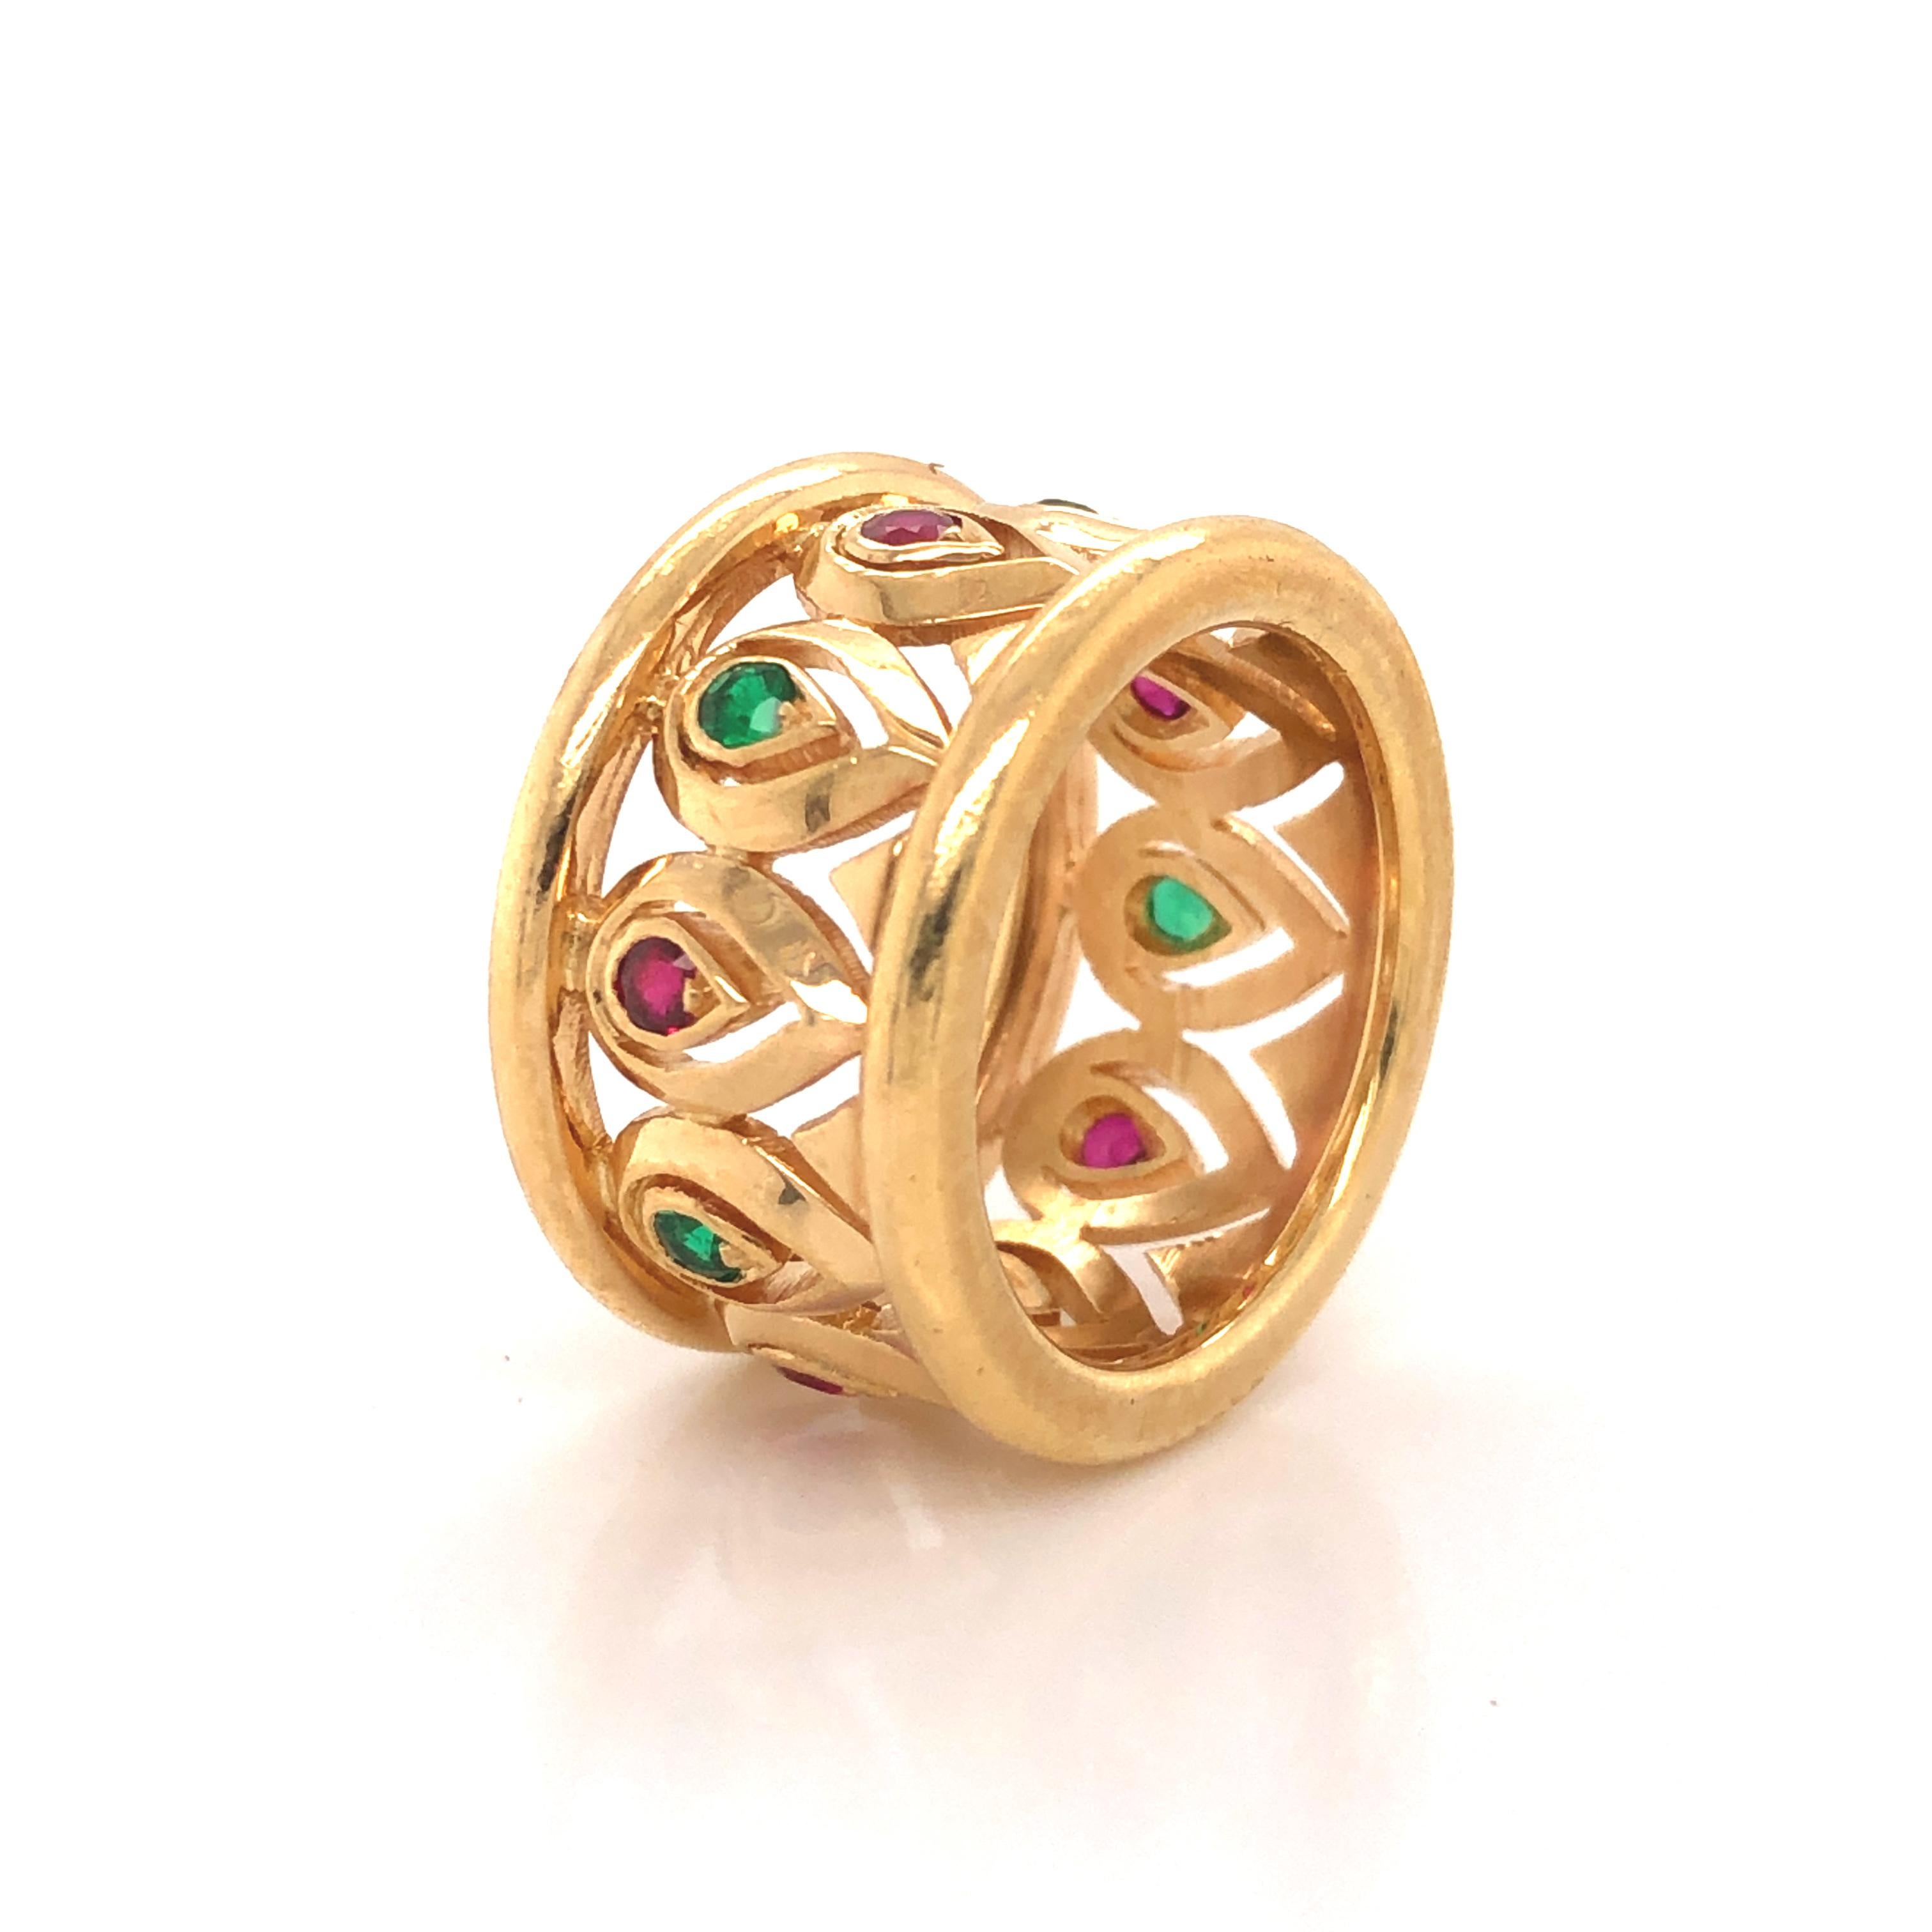 Schöner breiter Bandring von Cartier. Dieser elegante Ring zeigt ein erstaunliches durchbrochenes Design, das in 18 Karat Gelbgold gefertigt wurde. Natürliche Rubine und Smaragde sind in einem schönen, abwechselnden Muster gefasst.  Die Verarbeitung